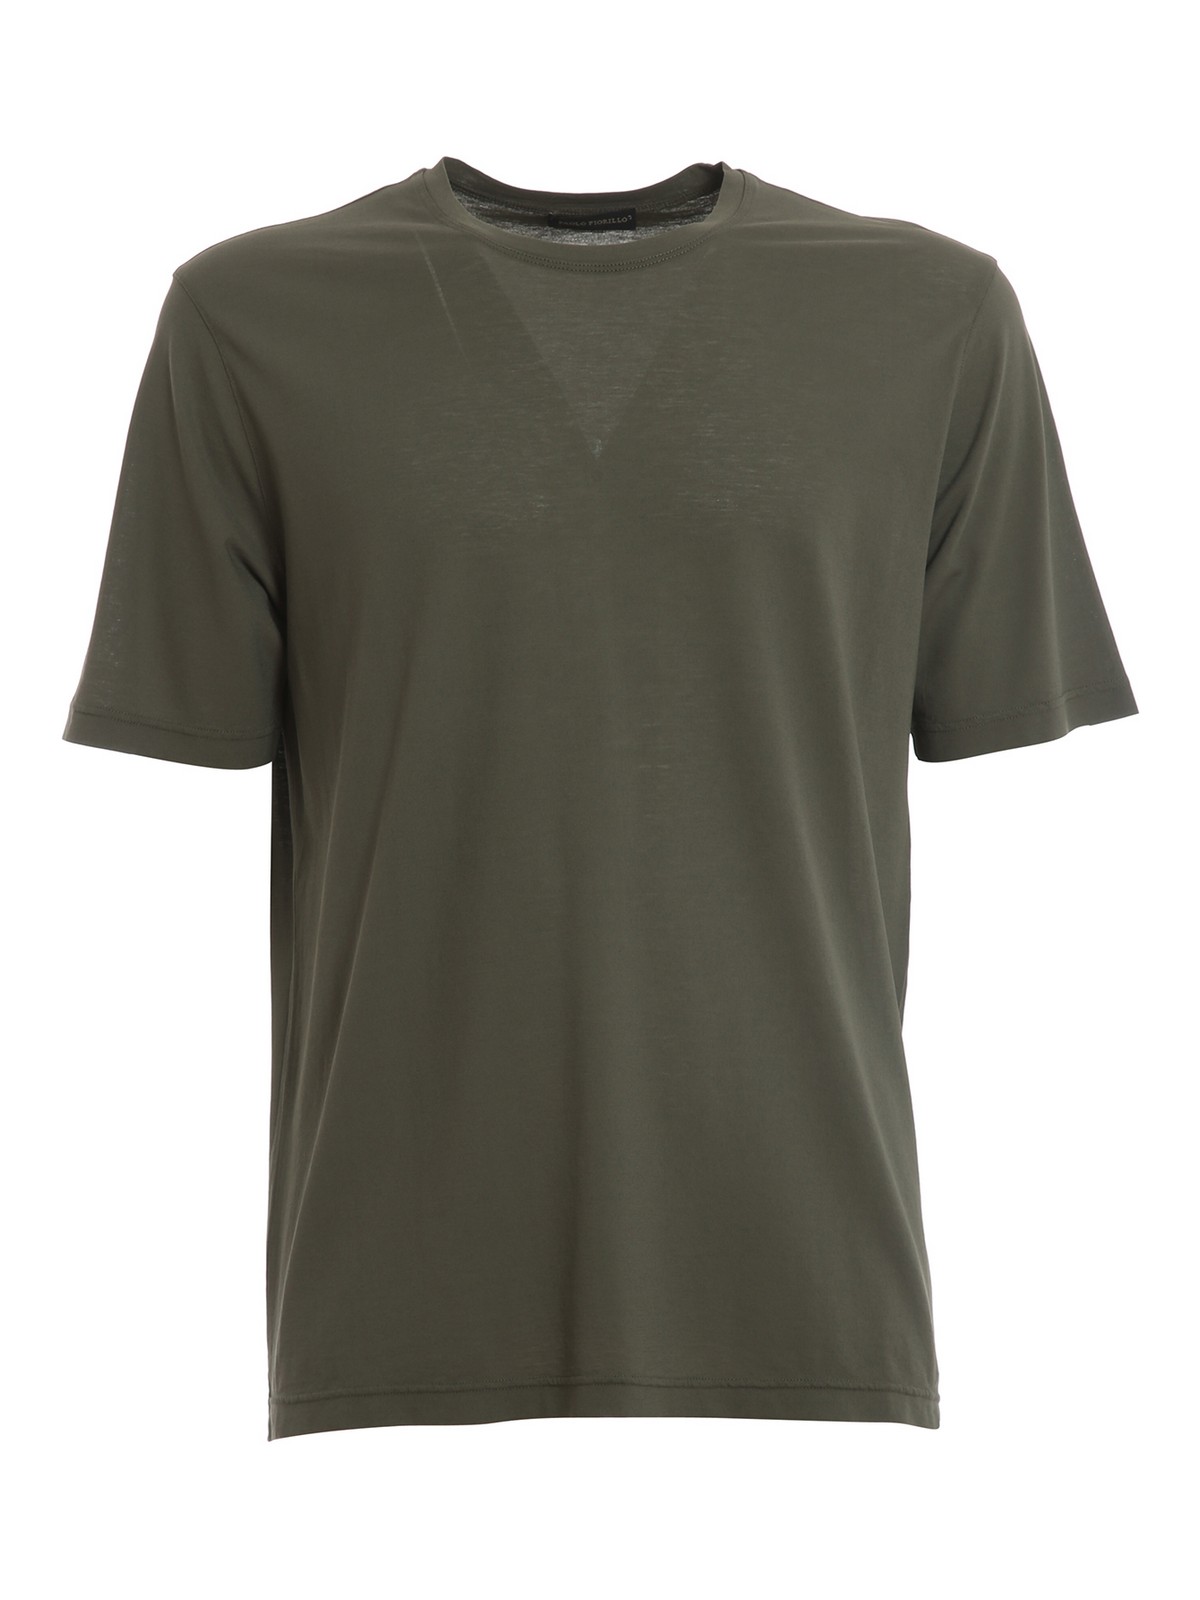 Paolo Fiorillo Cotton Crepe T-shirt In Dark Green